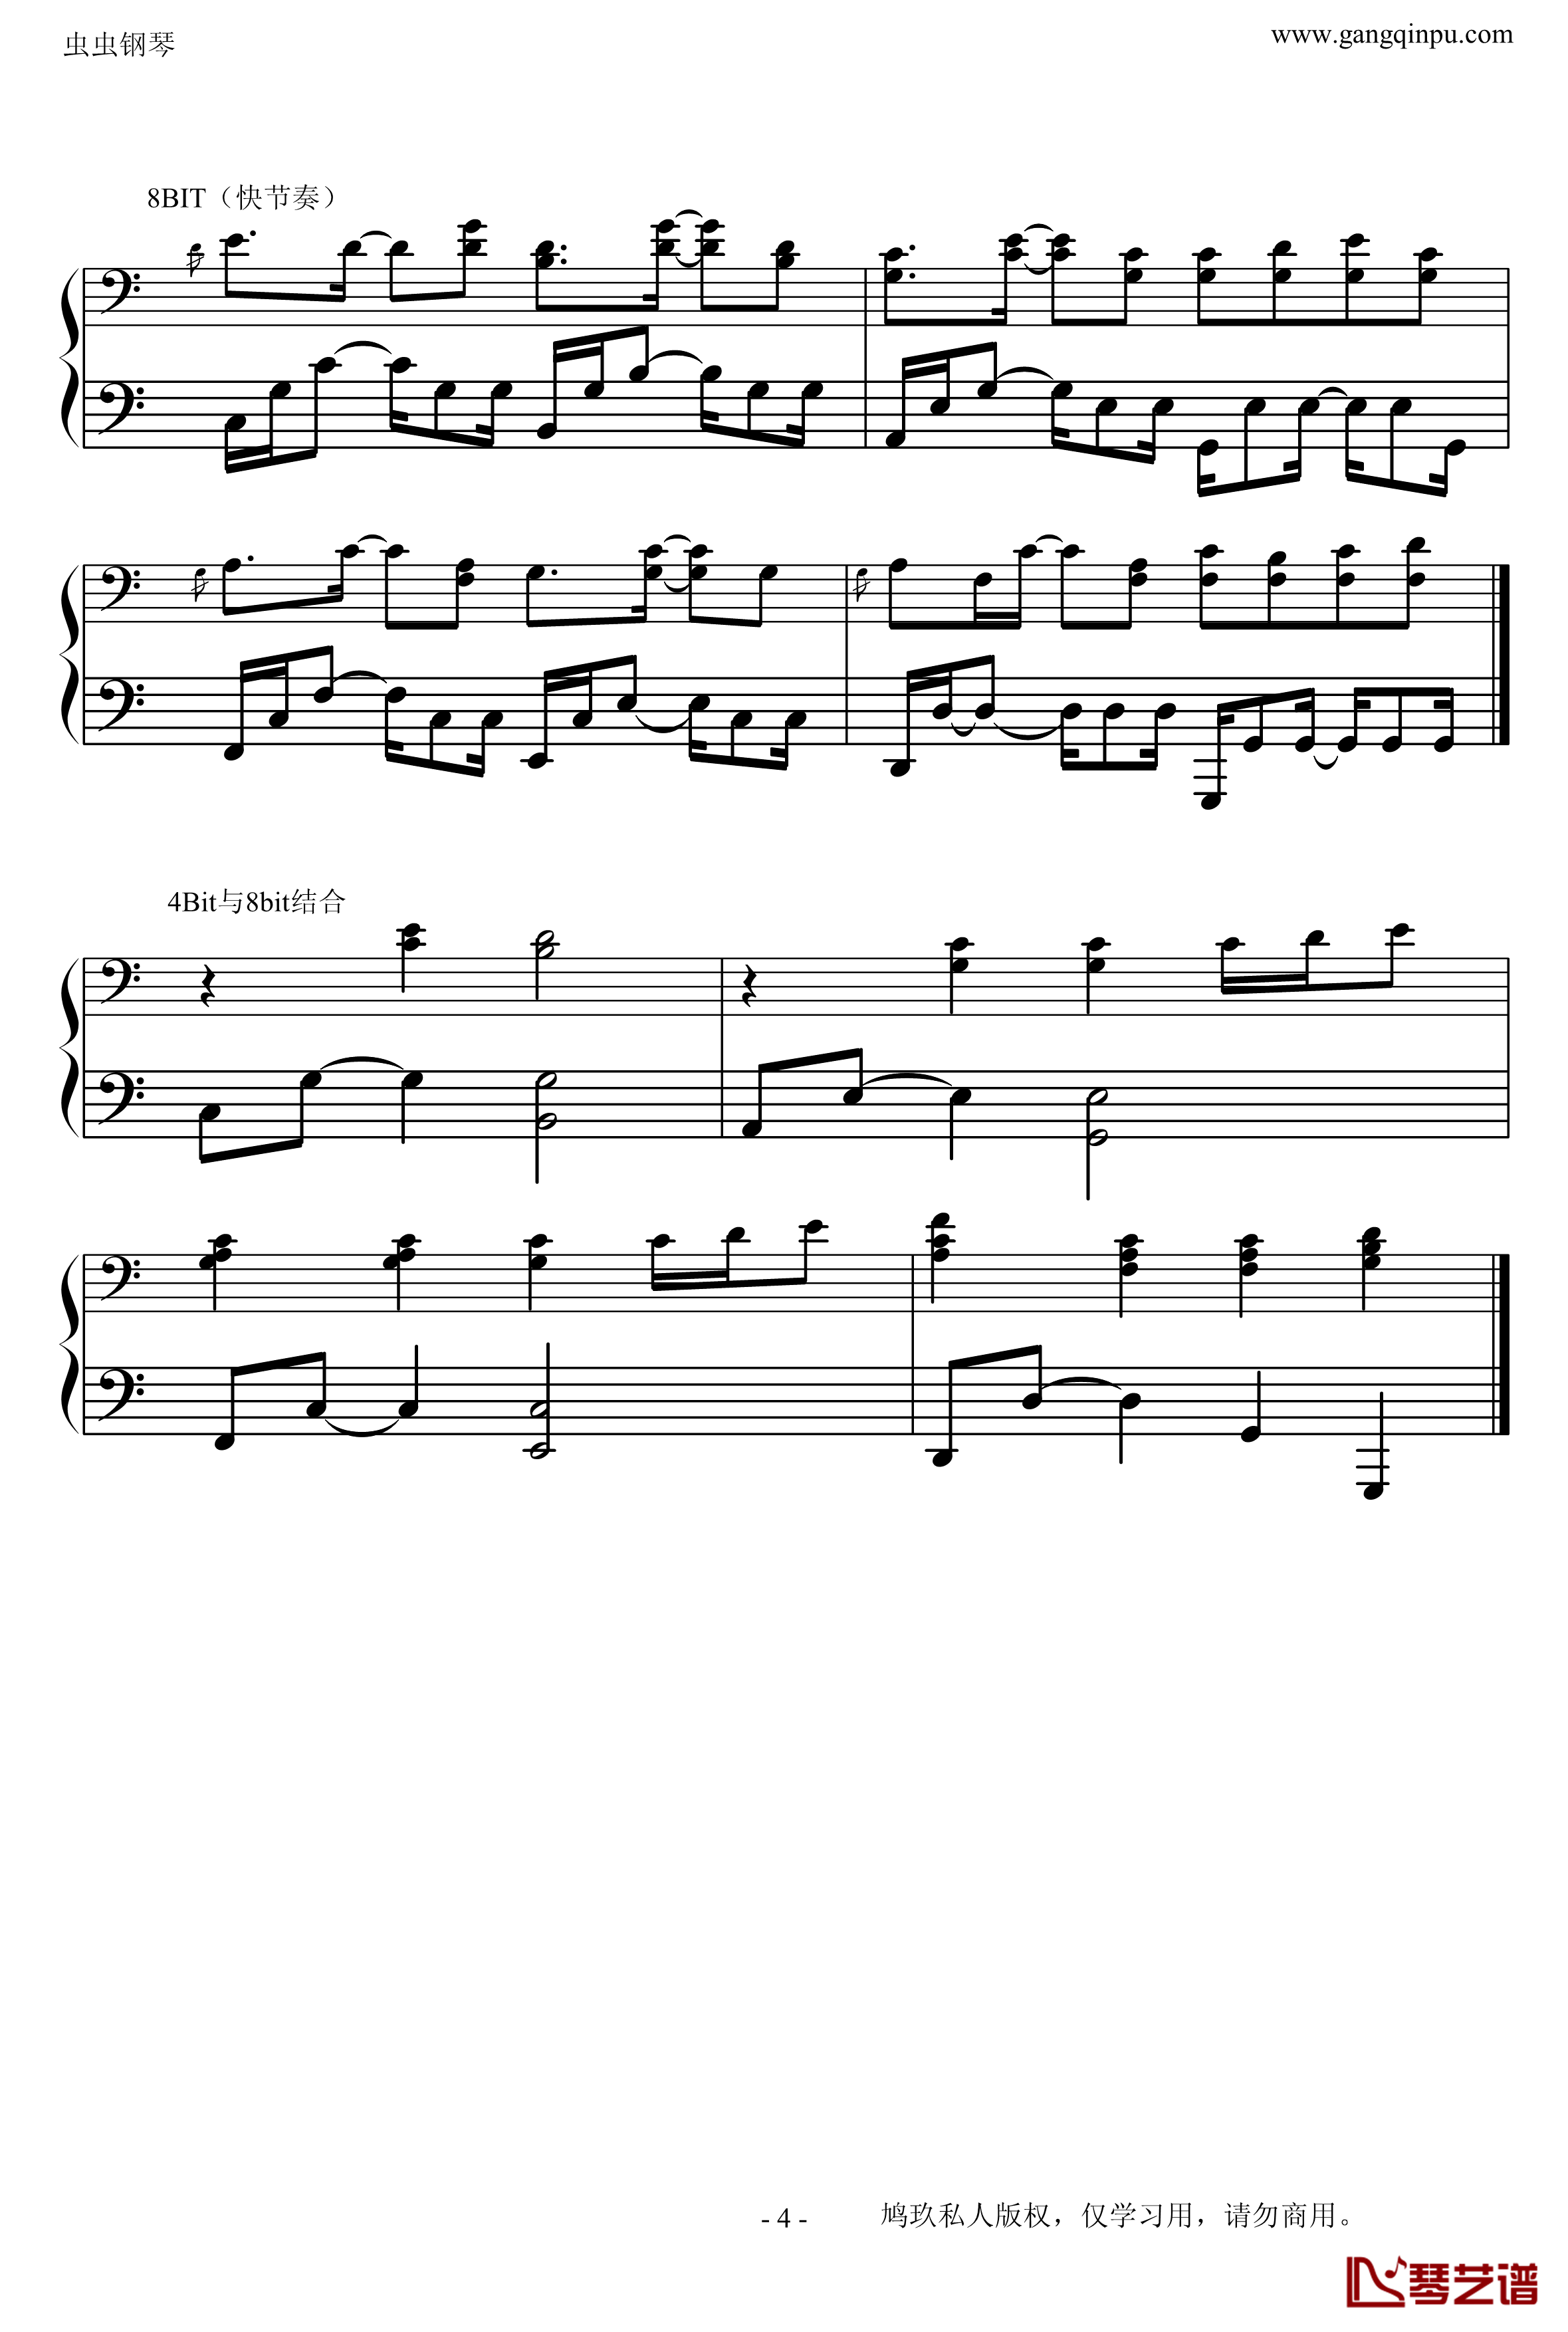 菊次郎的夏天钢琴谱-改编的-示范钢琴弹唱的常见伴奏型久石让4